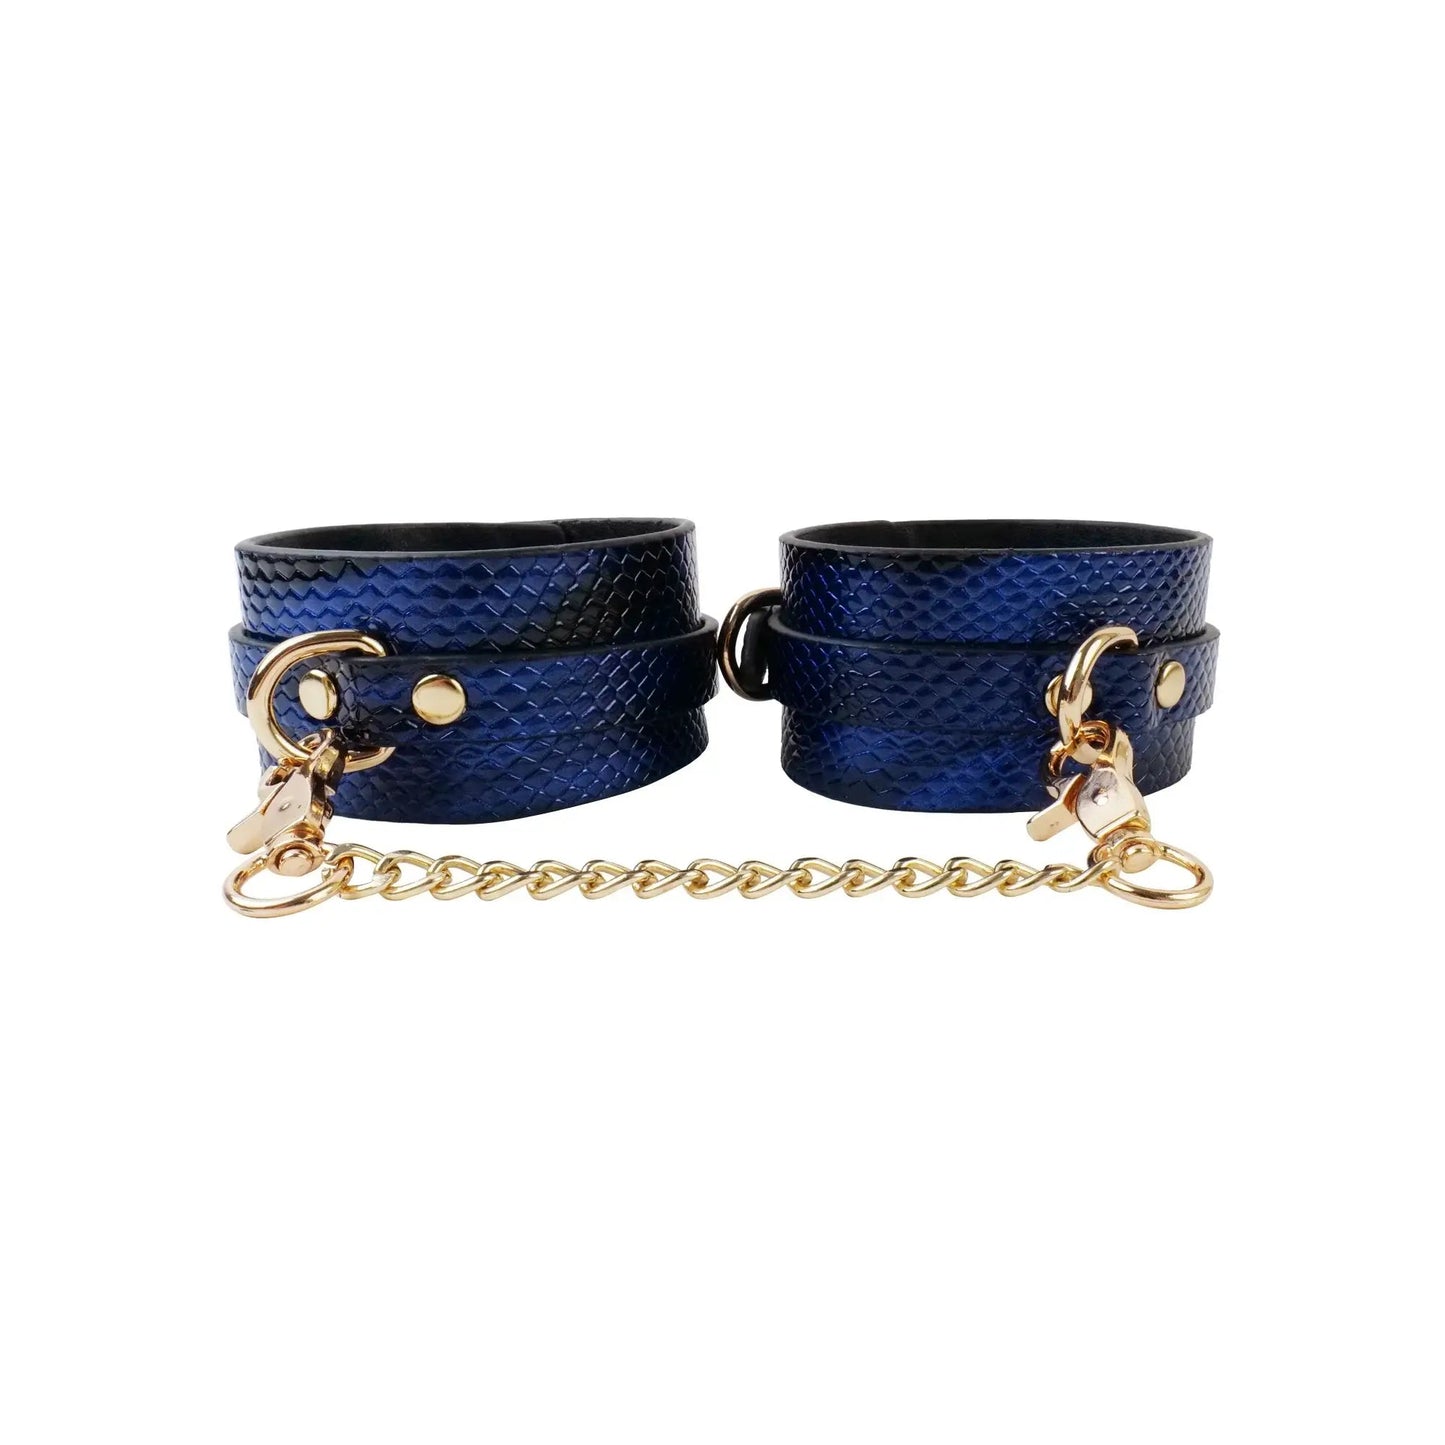 Bondage toy 7-piece blue snakeskin style luxury set